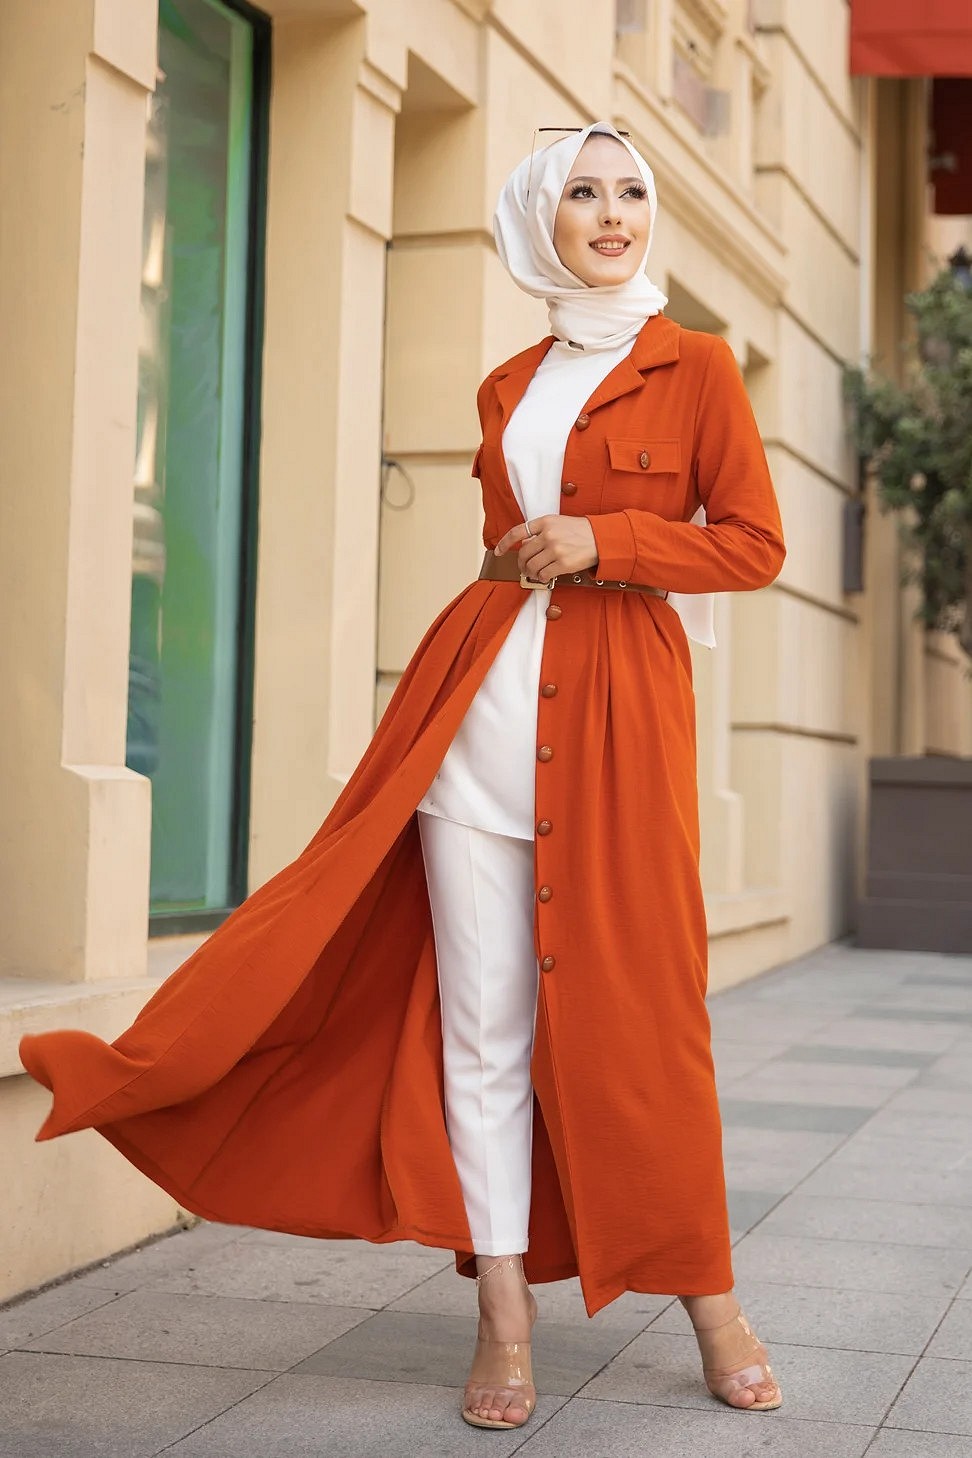 Robe longue casual boutonnée avec sa ceinture (Vetement pour femme  musulmane) - Couleur brique